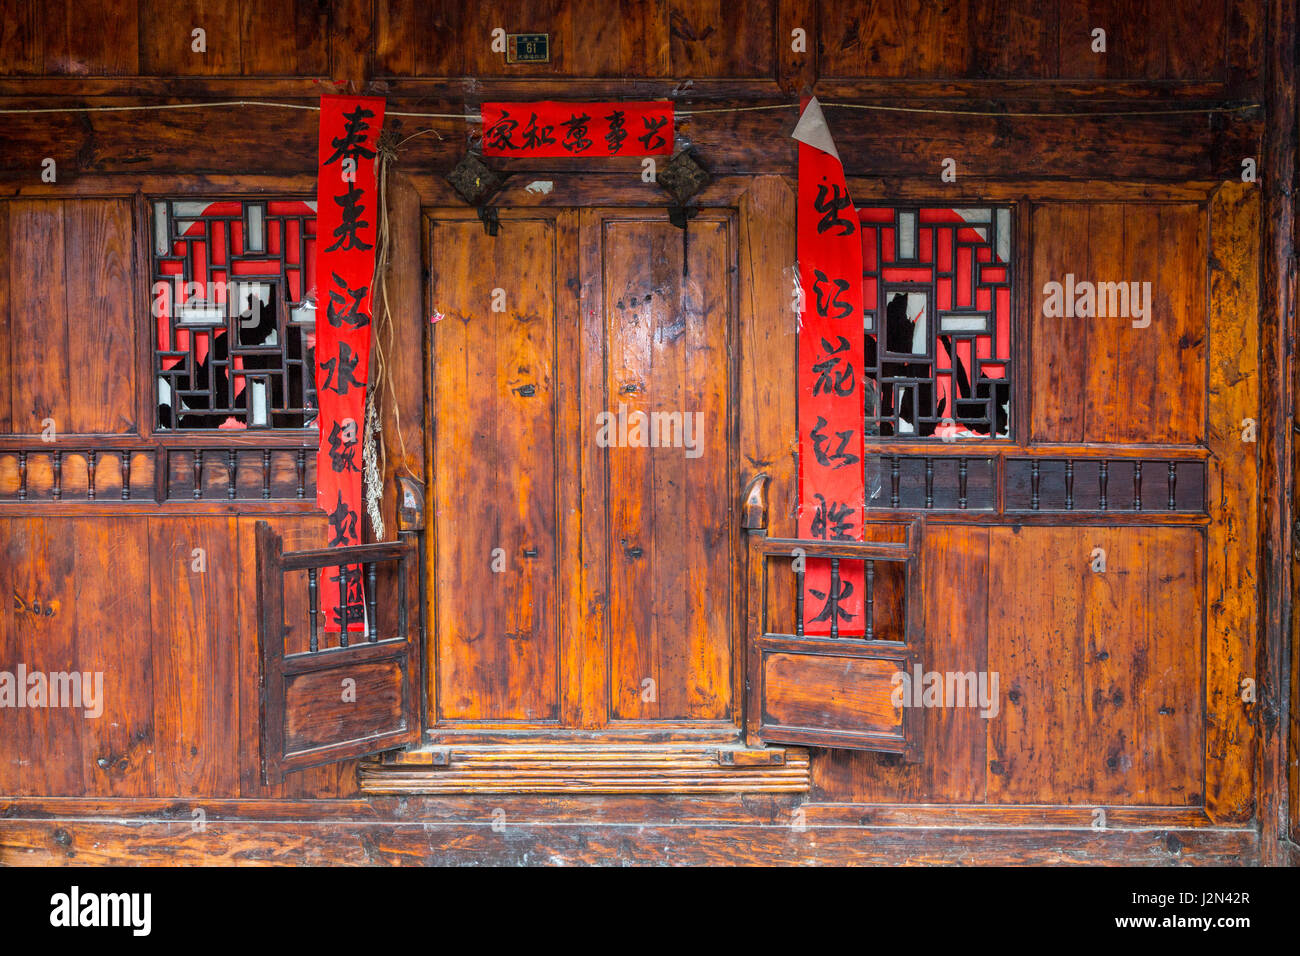 Matang, einem Gejia Dorf in Guizhou, China.  Eingang zum Privathaus mit Frühlingsfest (Neujahr) scrollt zitiert Gedichte von Bai Juyi. Stockfoto